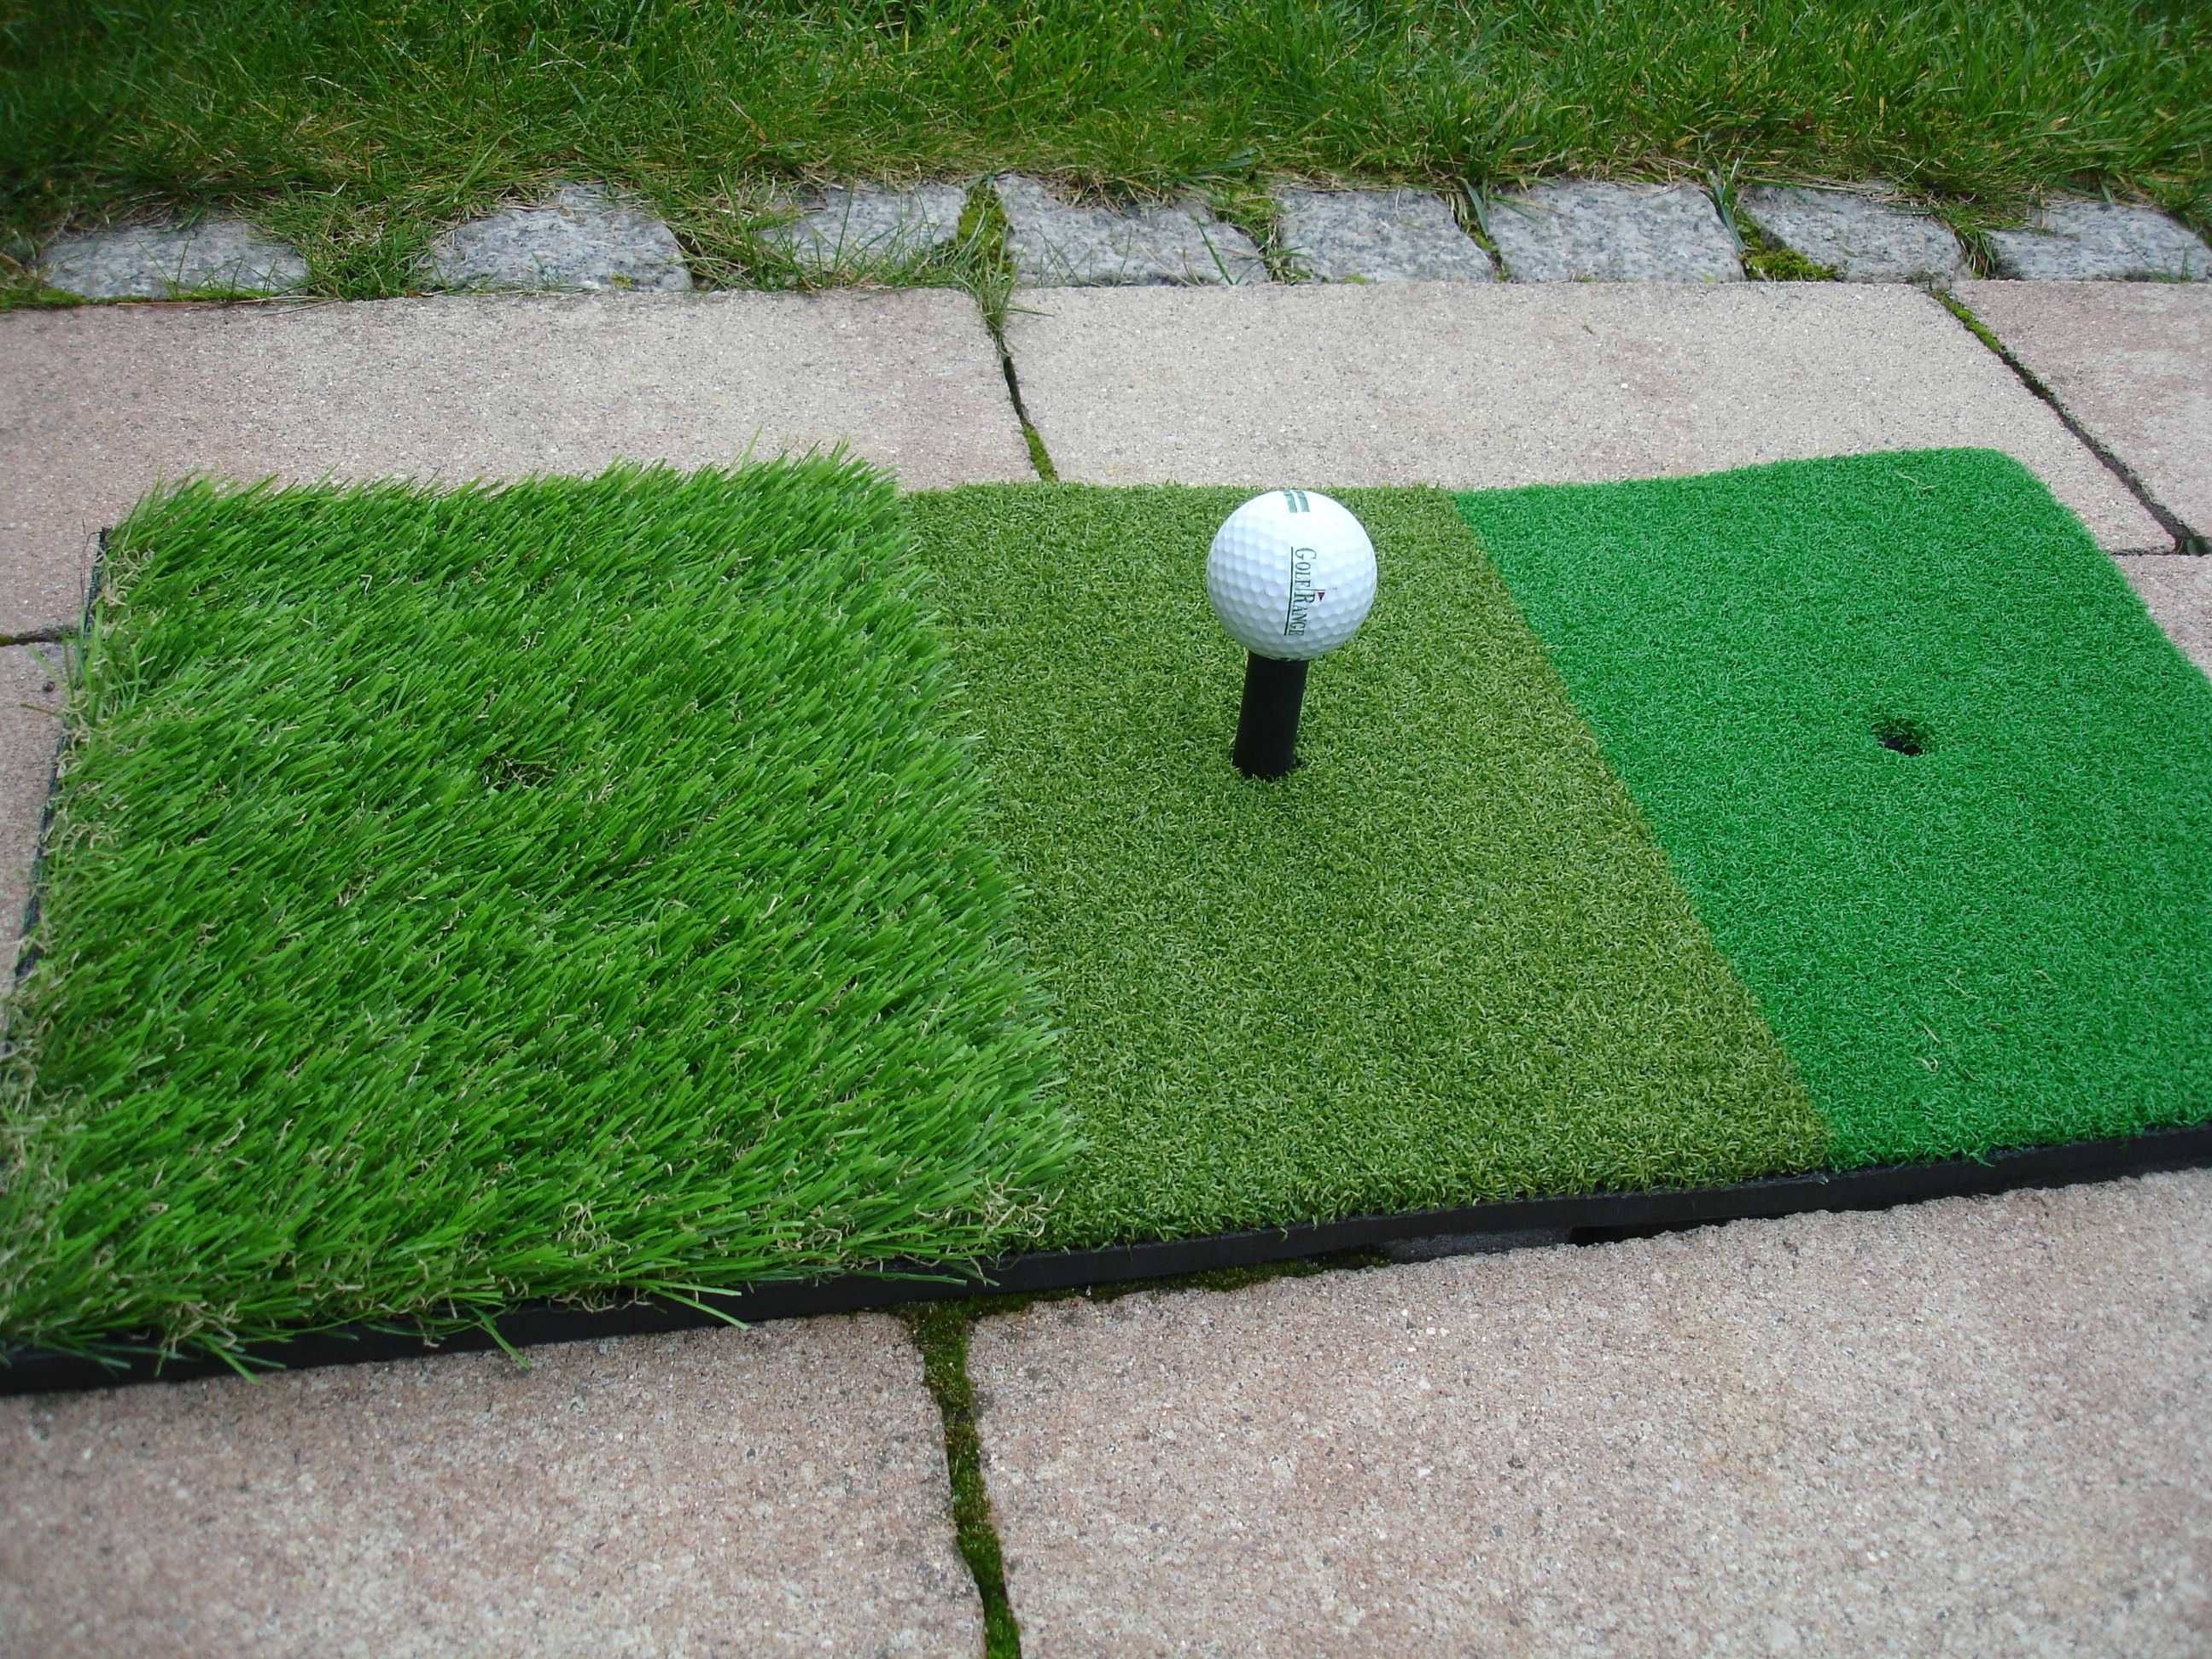 Mata golfowa do wybijania mała ok. 60/30cm 3 rodz.trawy